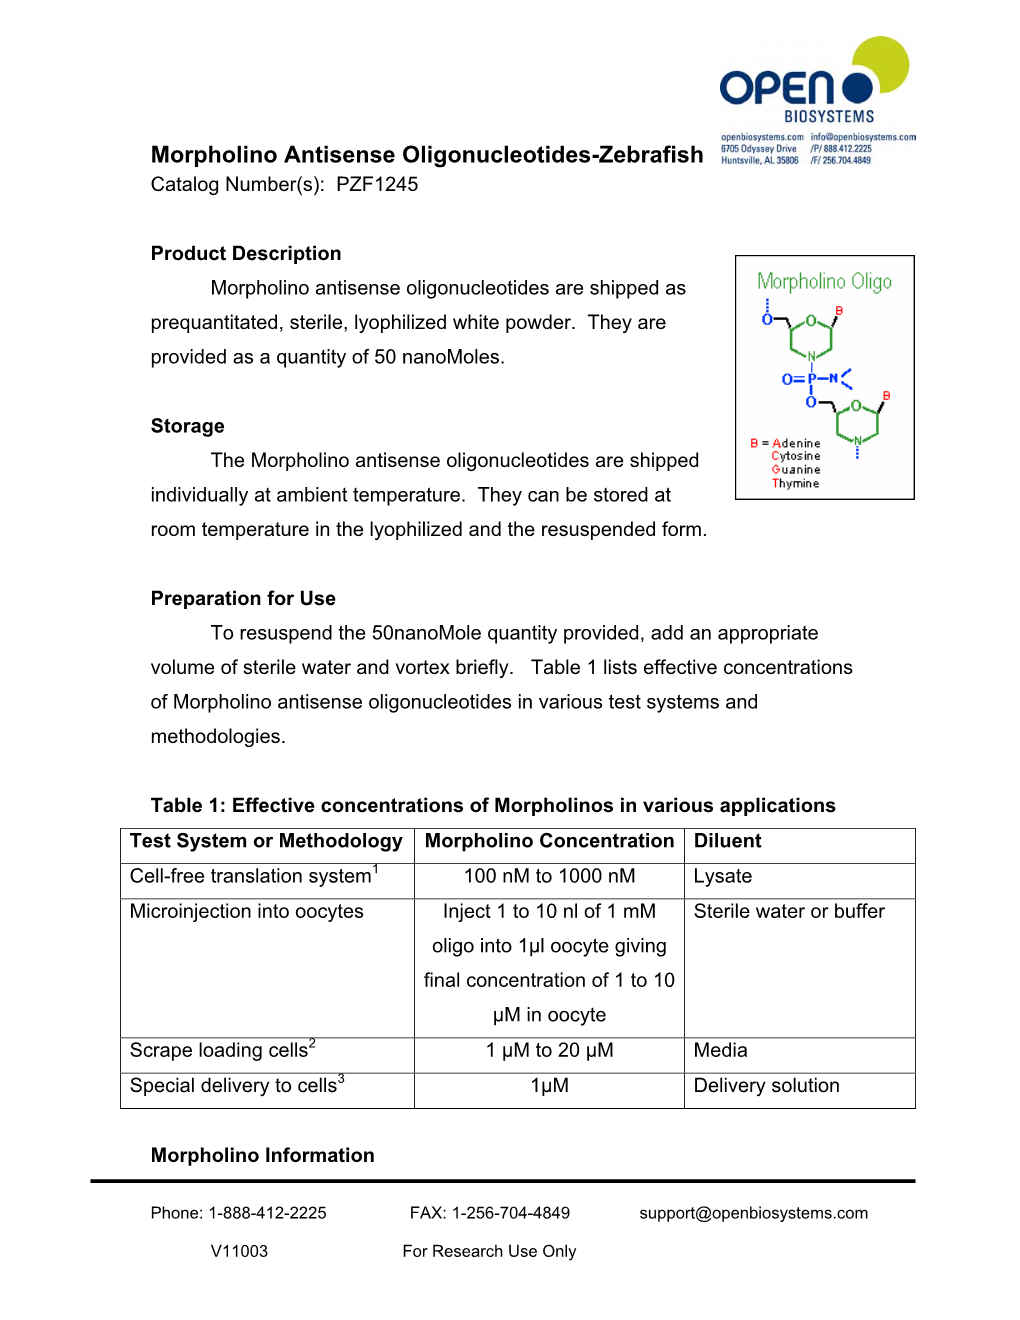 Morpholino Antisense Oligonucleotides-Zebrafish Catalog Number(S): PZF1245